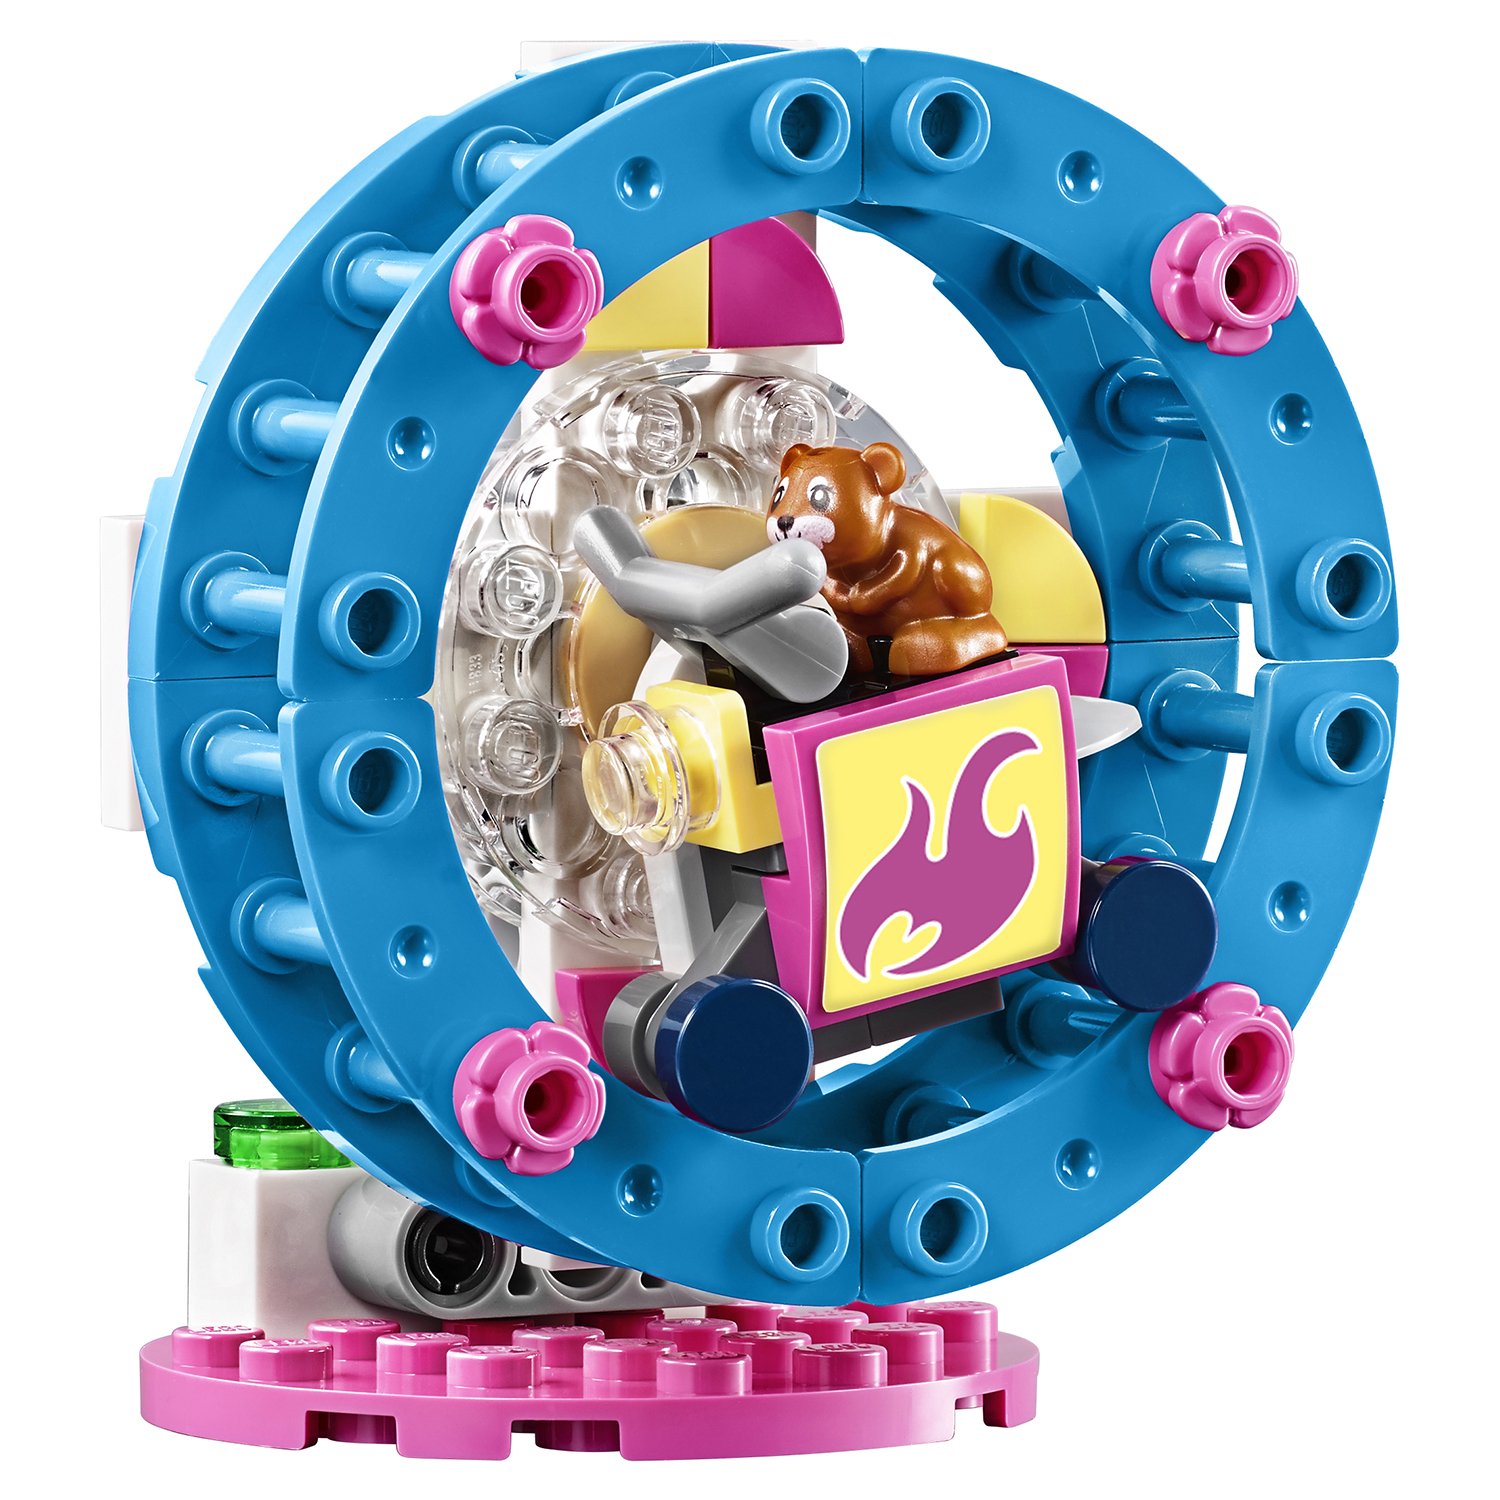 Lego Friends 41383 Игровая площадка для хомячка Оливии 